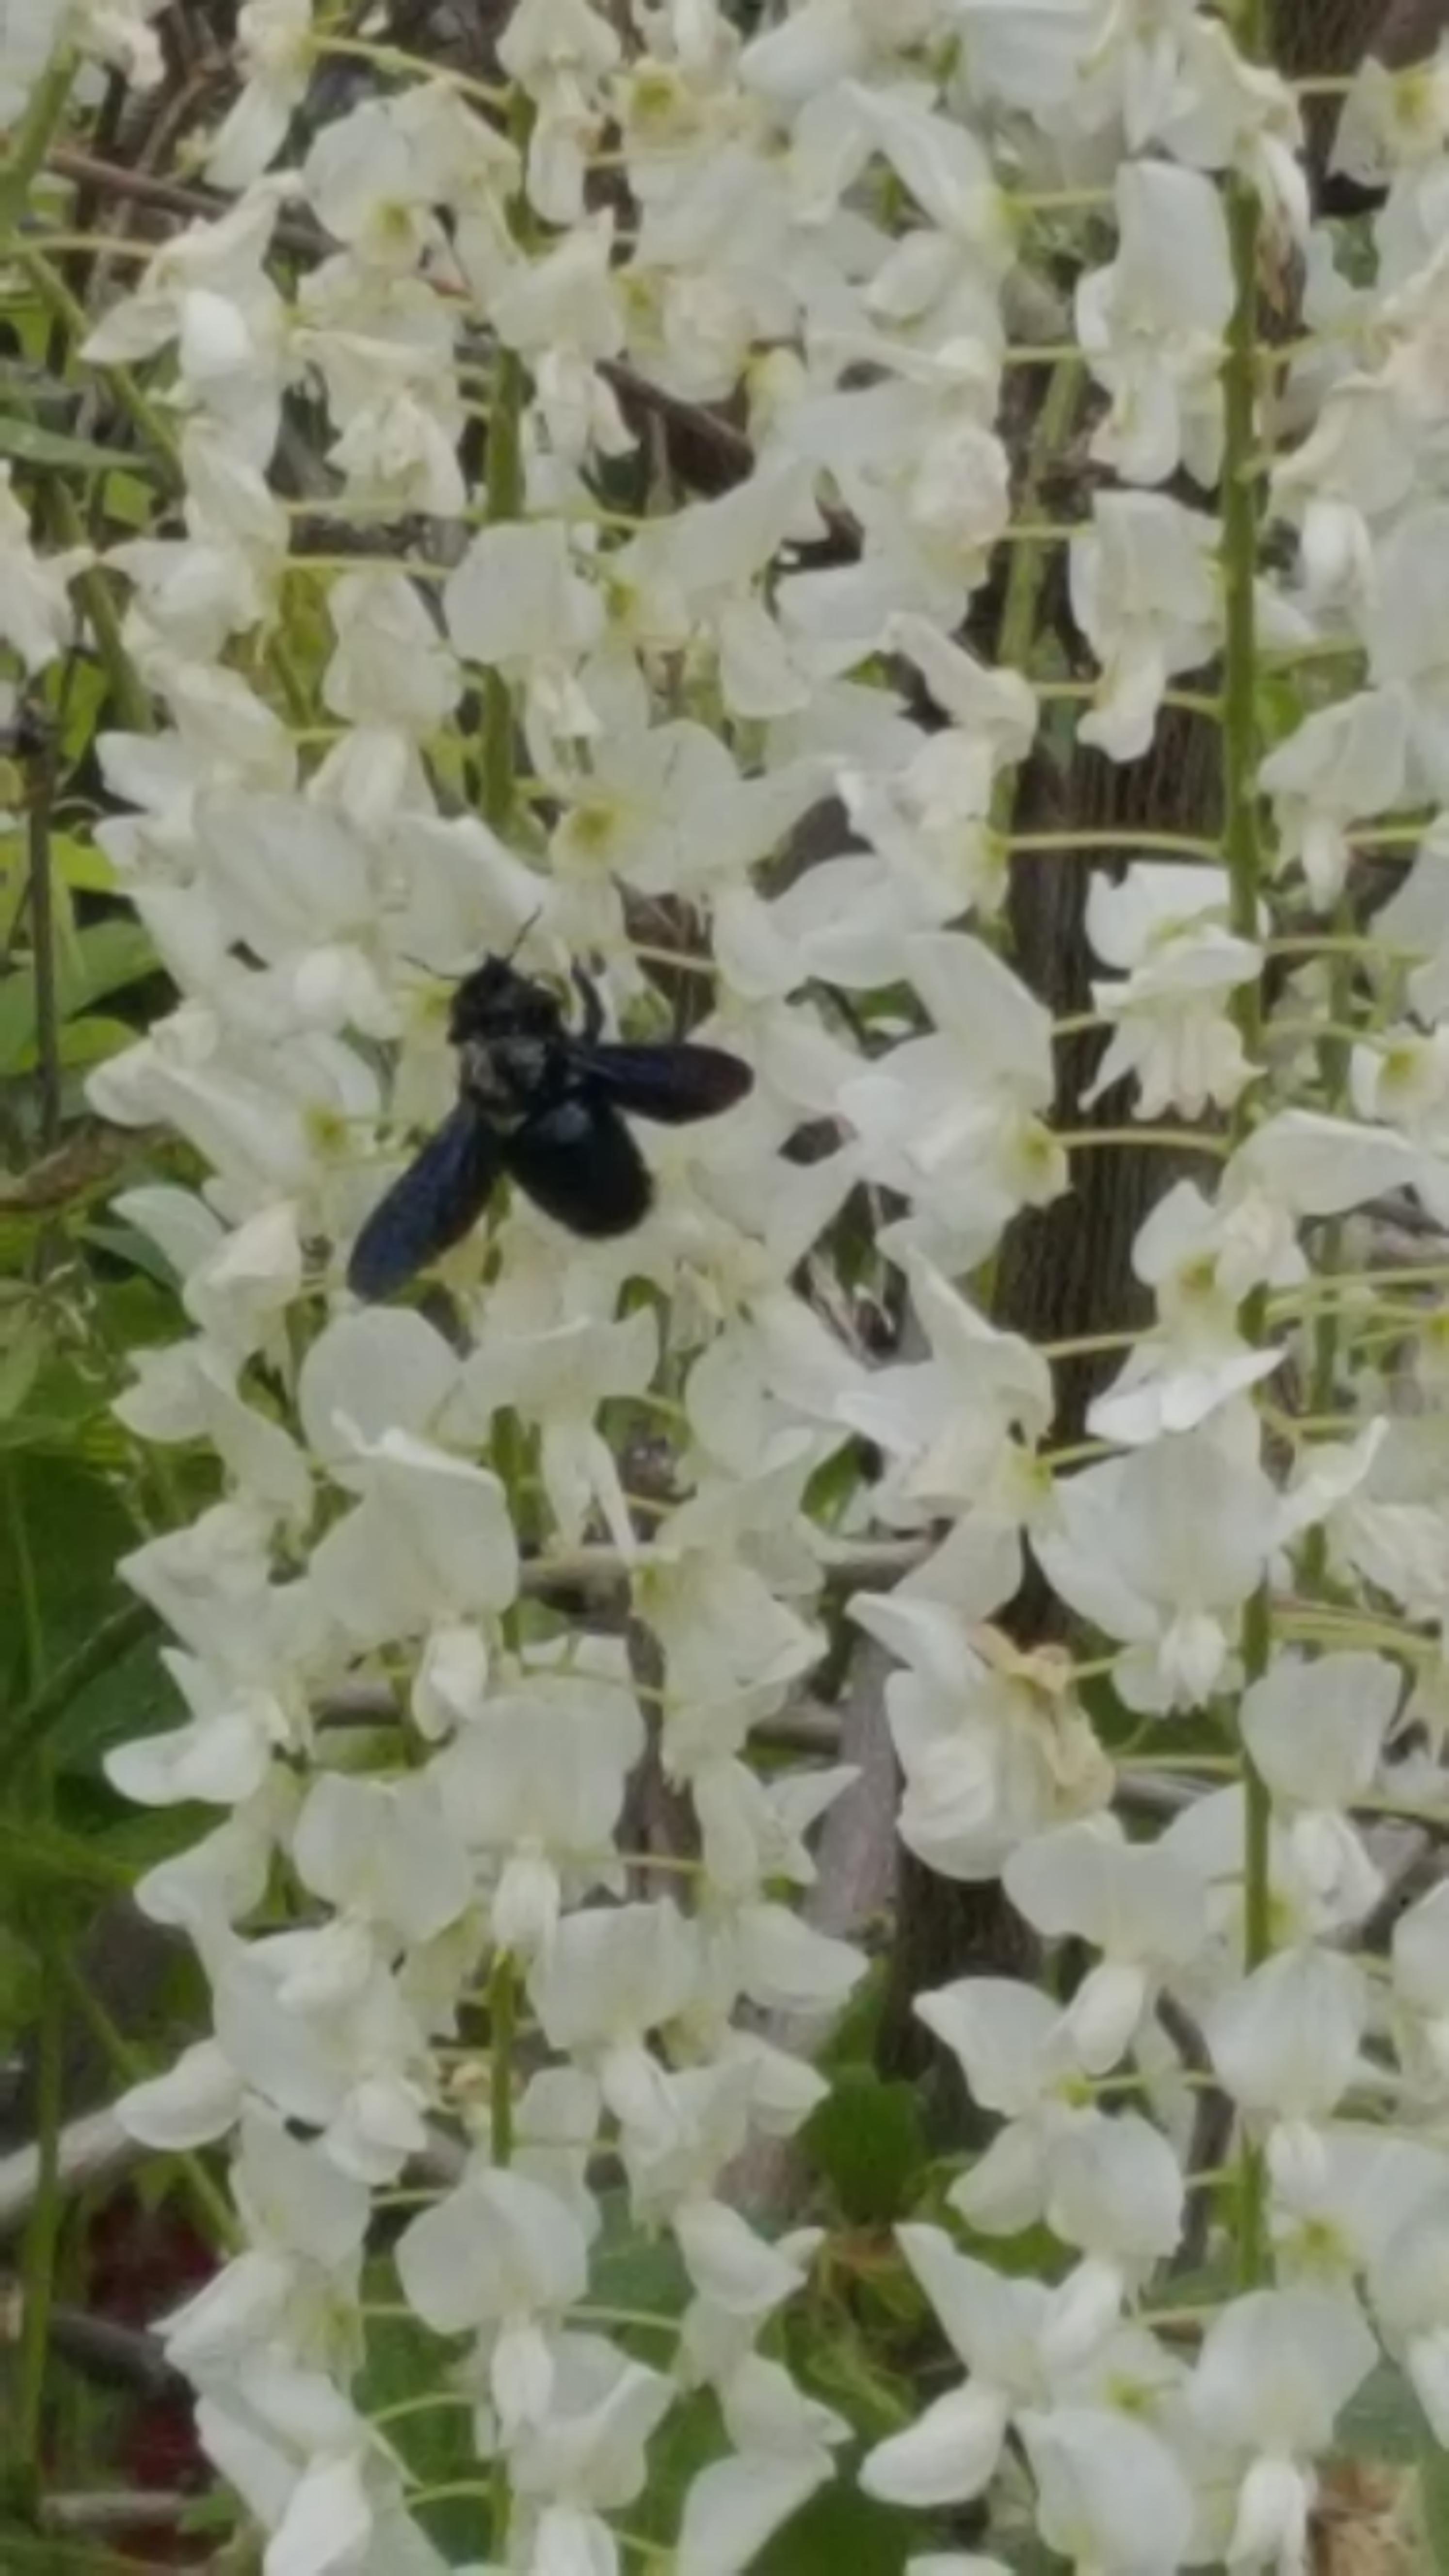 Auch die blaue Holzbiene haben wir bei uns dieses Jahr das 1. Mal häufiger gesehen ,oft am weißen  duftenden Blauregen .